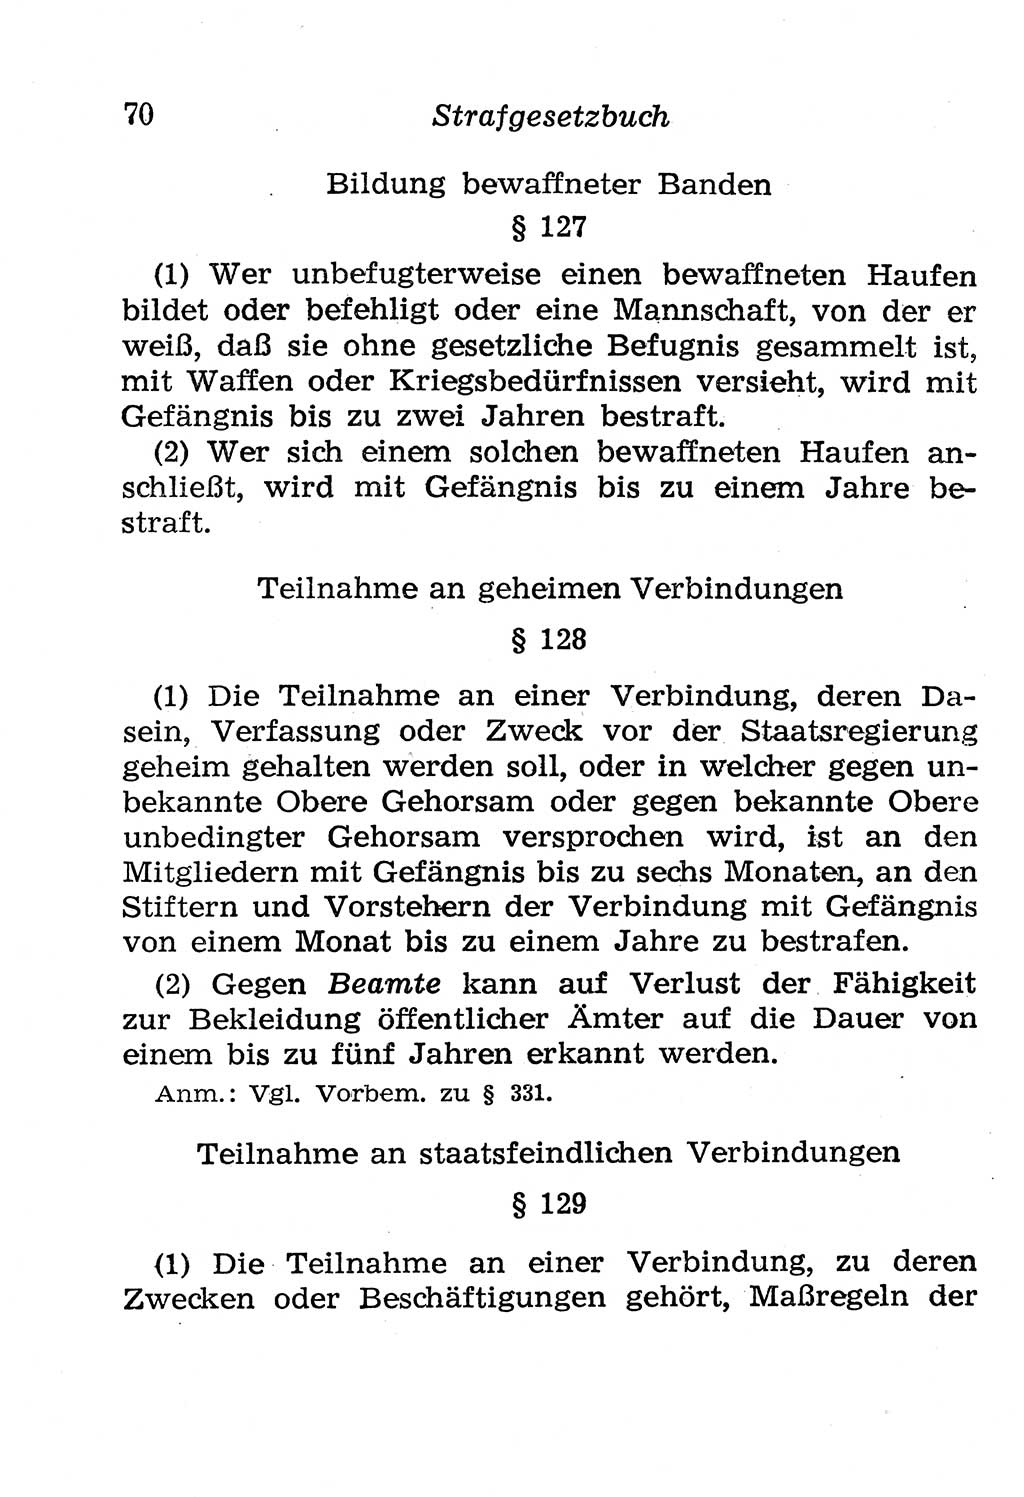 Strafgesetzbuch (StGB) und andere Strafgesetze [Deutsche Demokratische Republik (DDR)] 1958, Seite 70 (StGB Strafges. DDR 1958, S. 70)